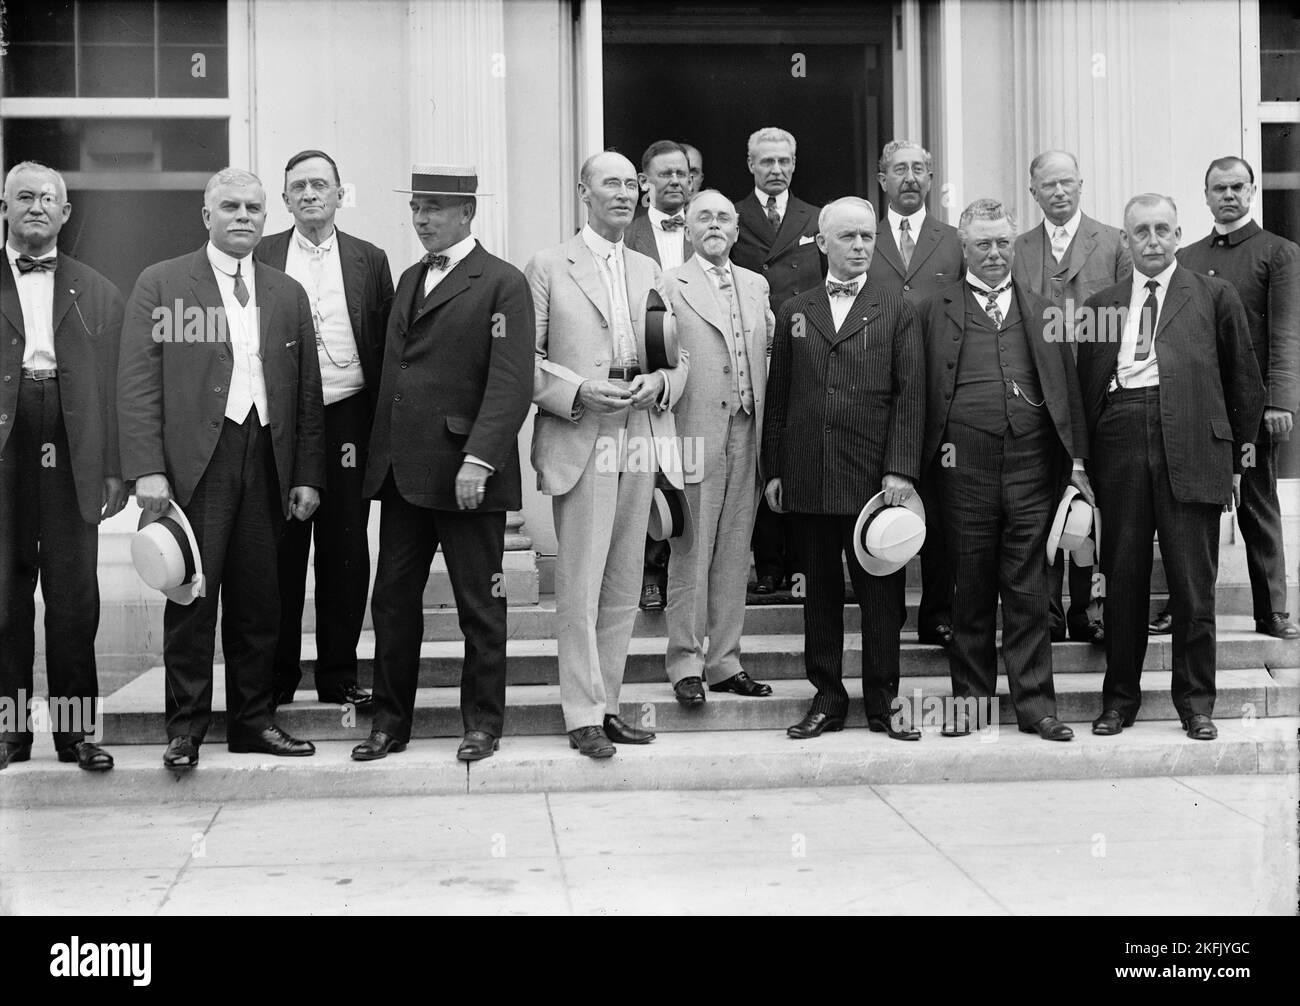 Railroad uomini alla Casa Bianca - teste: W.G. Lee, Pres., Board of Railway Trainmen; Warren B. Stone, Pres., Board of Locomotive Engineers; Herman W. Wills, Washington Republican Labor Orgs.; Alfred H. Smith, V.P., N.Y.C. Ferrovia; A.B. Garretson, Pres., Ord. Conduttori ferroviari; Head in Door Unident.; 1/2 Face, 1913. Foto Stock